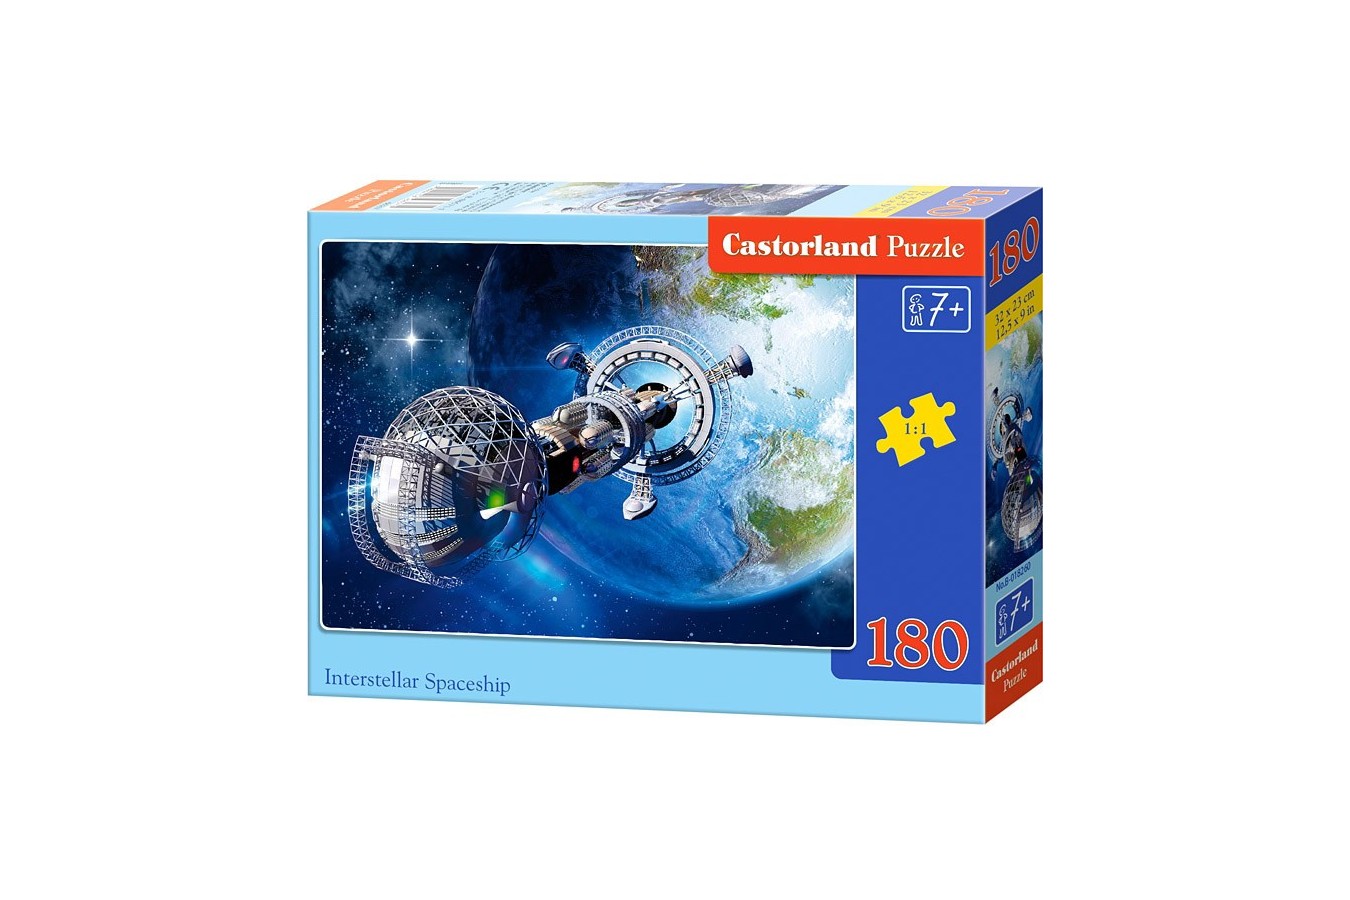 Puzzle Castorland - Insterstellar Spaceship, 180 Piese